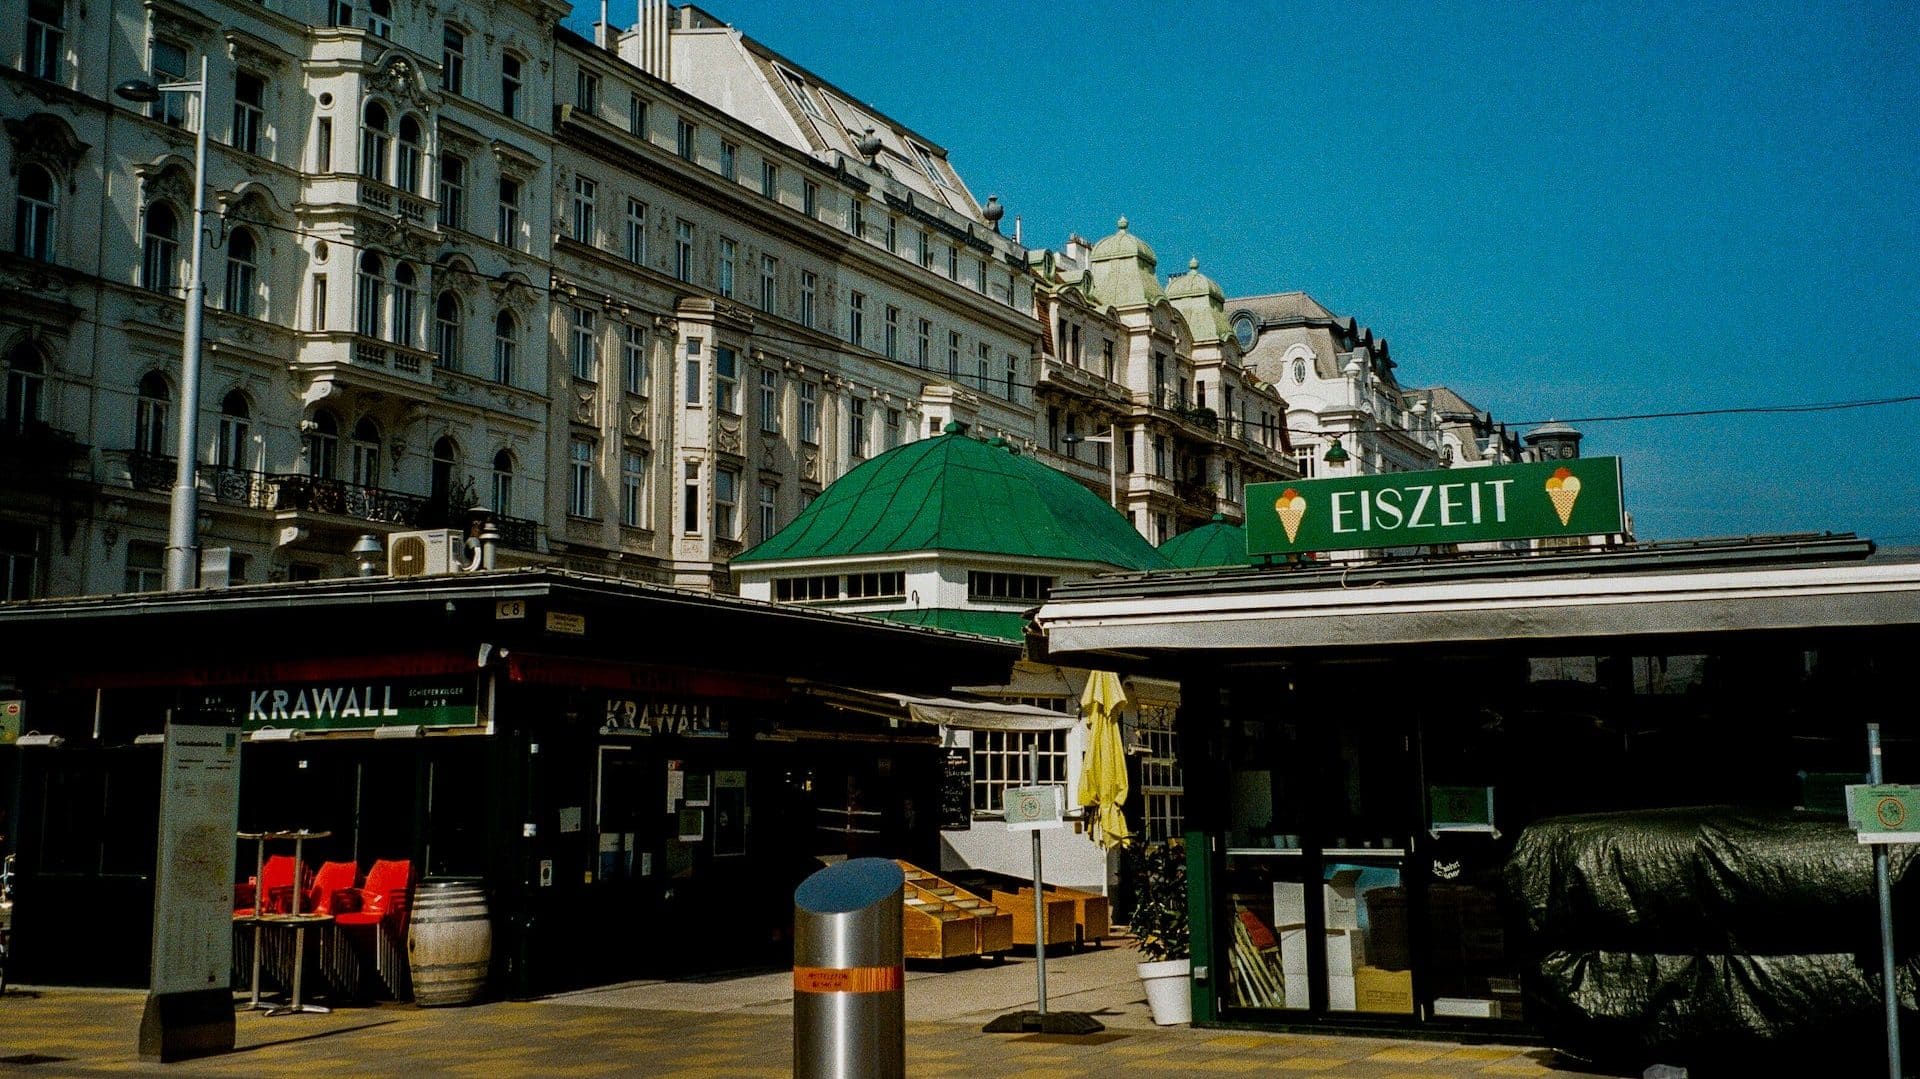 Naschmarkt, the most popular market in Vienna is located between Wieden & Mariahilf